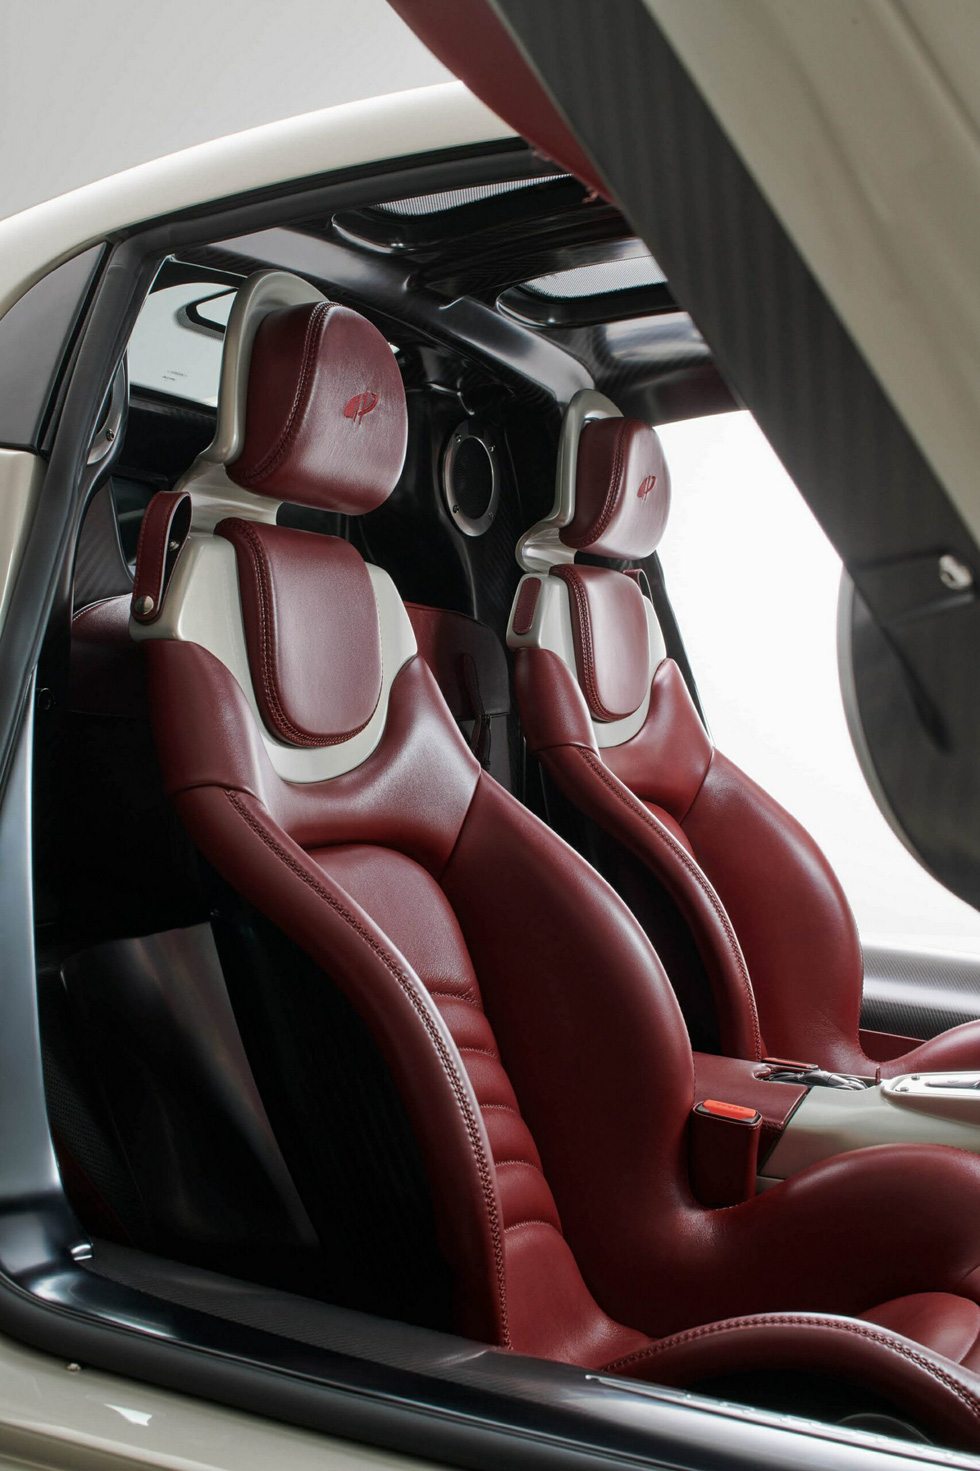 Pagani Utopia ra mắt: Kế cận Huayra, giá từ 2,19 triệu USD, dùng hộp số sàn và động cơ Mercedes - Ảnh 17.